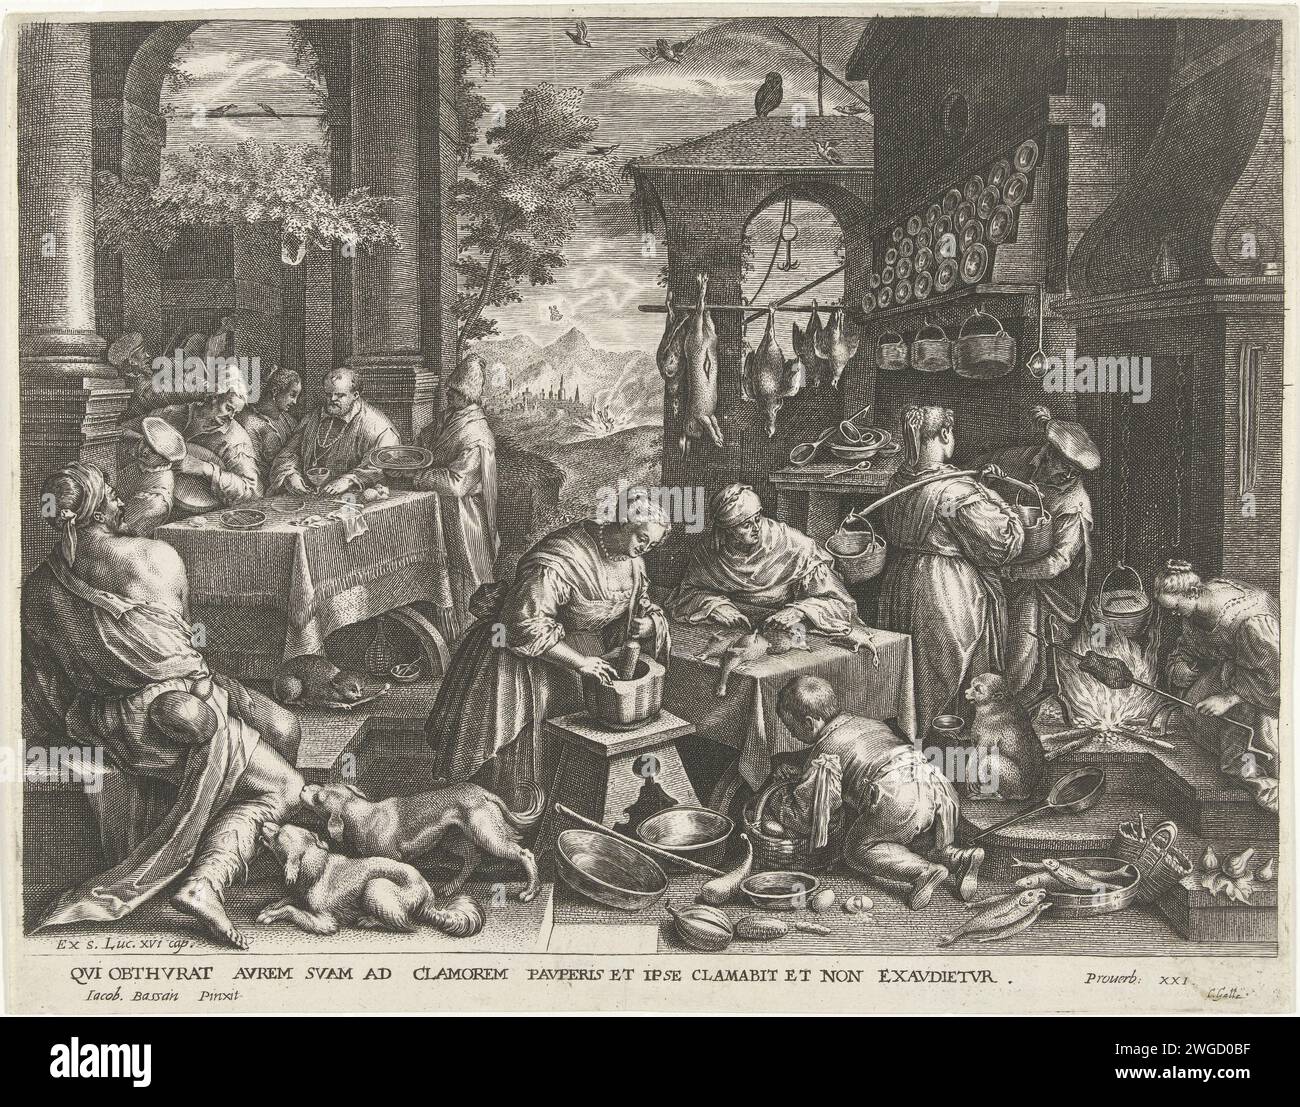 Somiglianza tra il ricco e il povero Lazzaro, Cornelis Galle (i), dopo Johann Sadeler (i), dopo Jacopo Bassano, c. 1586 - c. 1650 stampa il ricco è riccamente servito nella sua casa. In cucina viene preparato un ampio banchetto. Il povero Lazzaro, mendicante, sta morendo di fame davanti alla casa. Due cani leccano sono ferite. Sullo sfondo si può vedere in un paesaggio come l'uomo ricco finisce nel fuoco dell'inferno, e Lazzaro è ammesso al cielo. La carta sconosciuta che incide il ricco (immersioni) è in festa, mentre il povero Lazzaro sta morendo di fame al cancello (cani che leccano le piaghe di Lazzaro) (Luca 16:19-31) Foto Stock